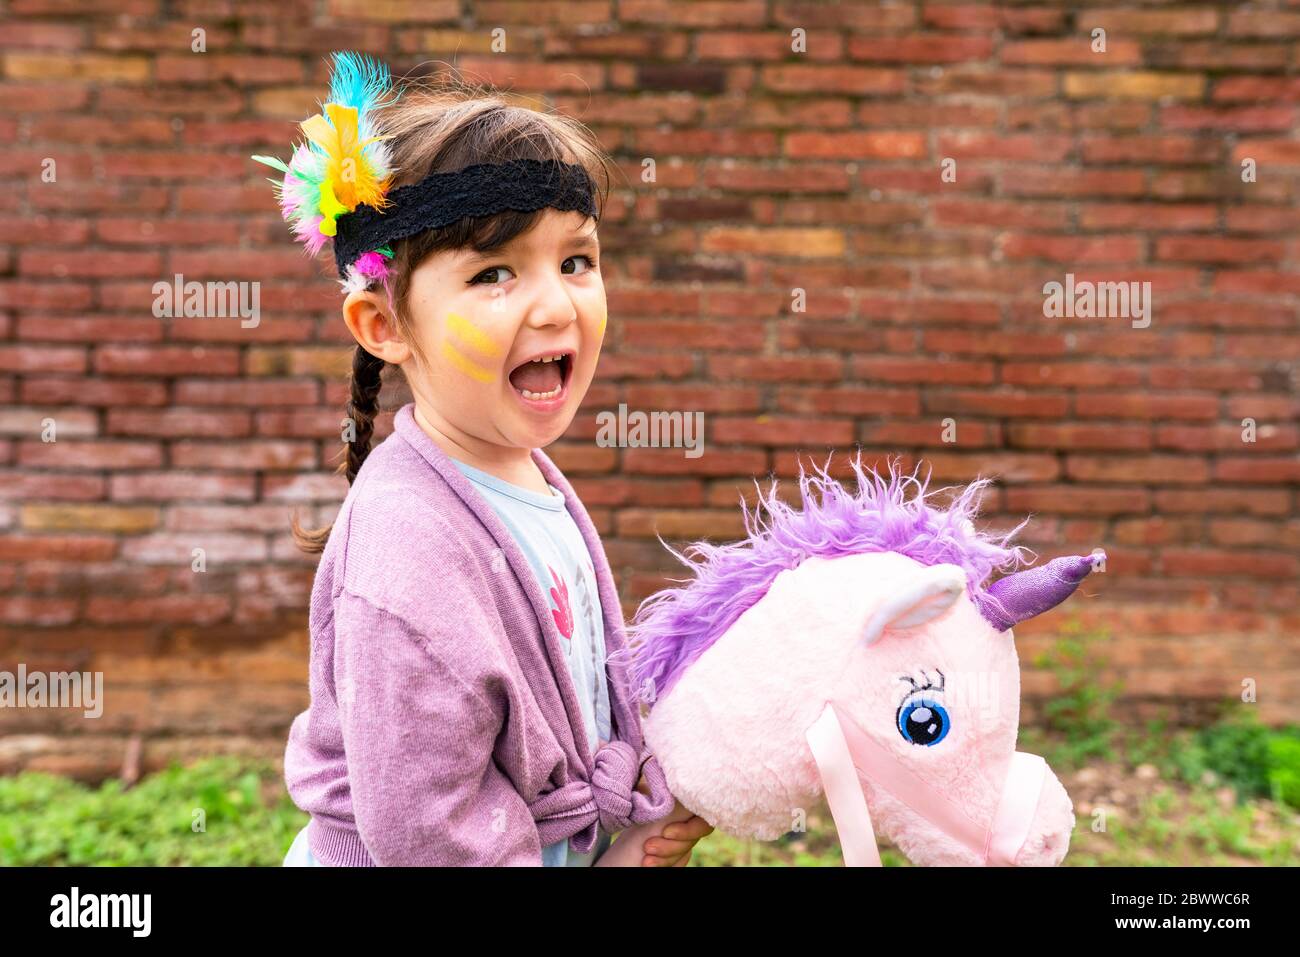 Portrait d'une fille avec des tresses et une plume de headaddress à cheval d'une licorne rose Banque D'Images